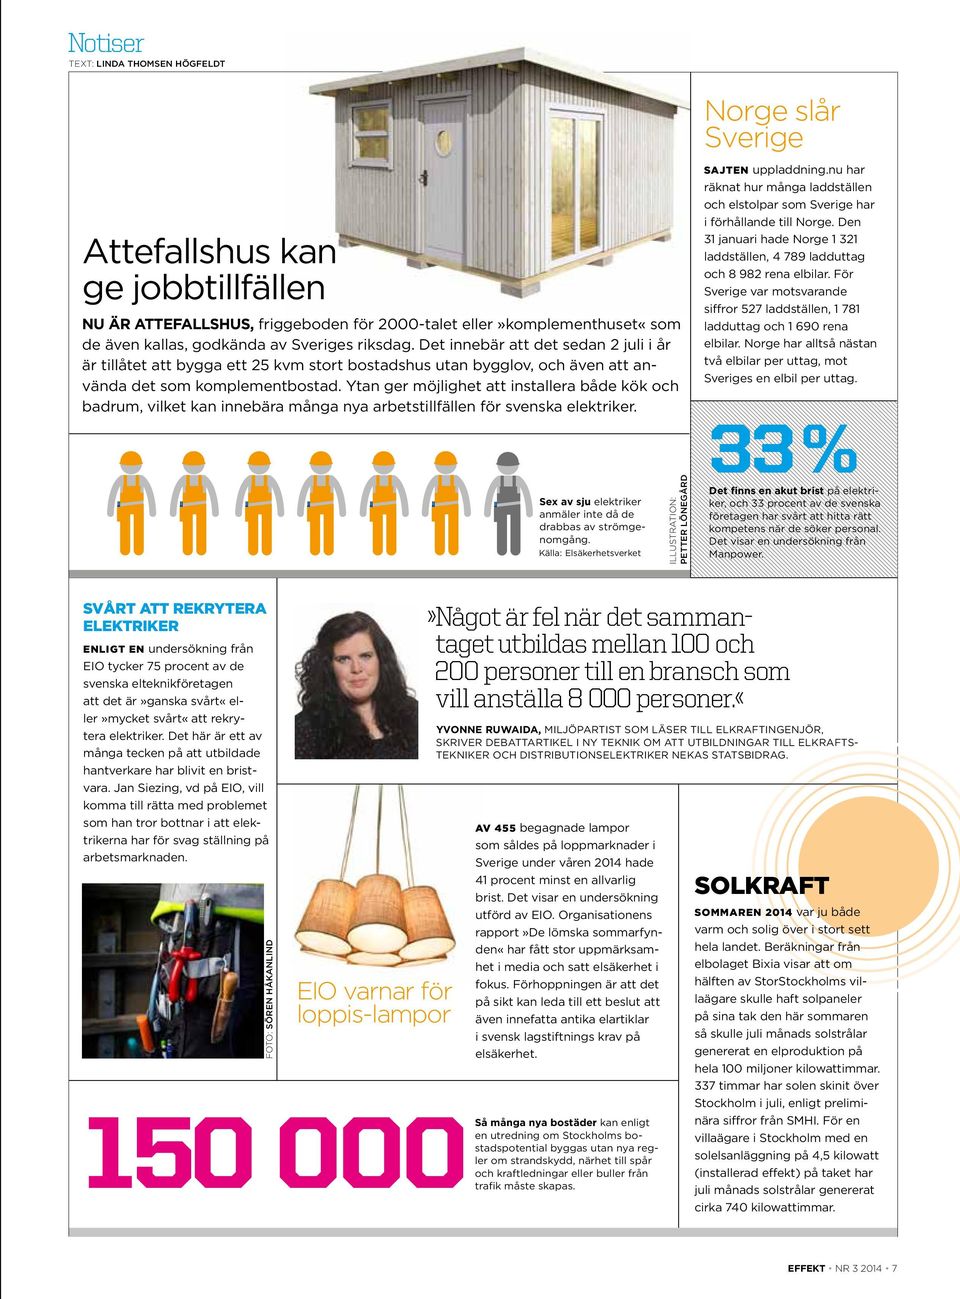 Ytan ger möjlighet att installera både kök och badrum, vilket kan innebära många nya arbetstillfällen för svenska elektriker. Sex av sju elektriker anmäler inte då de drabbas av strömgenomgång.